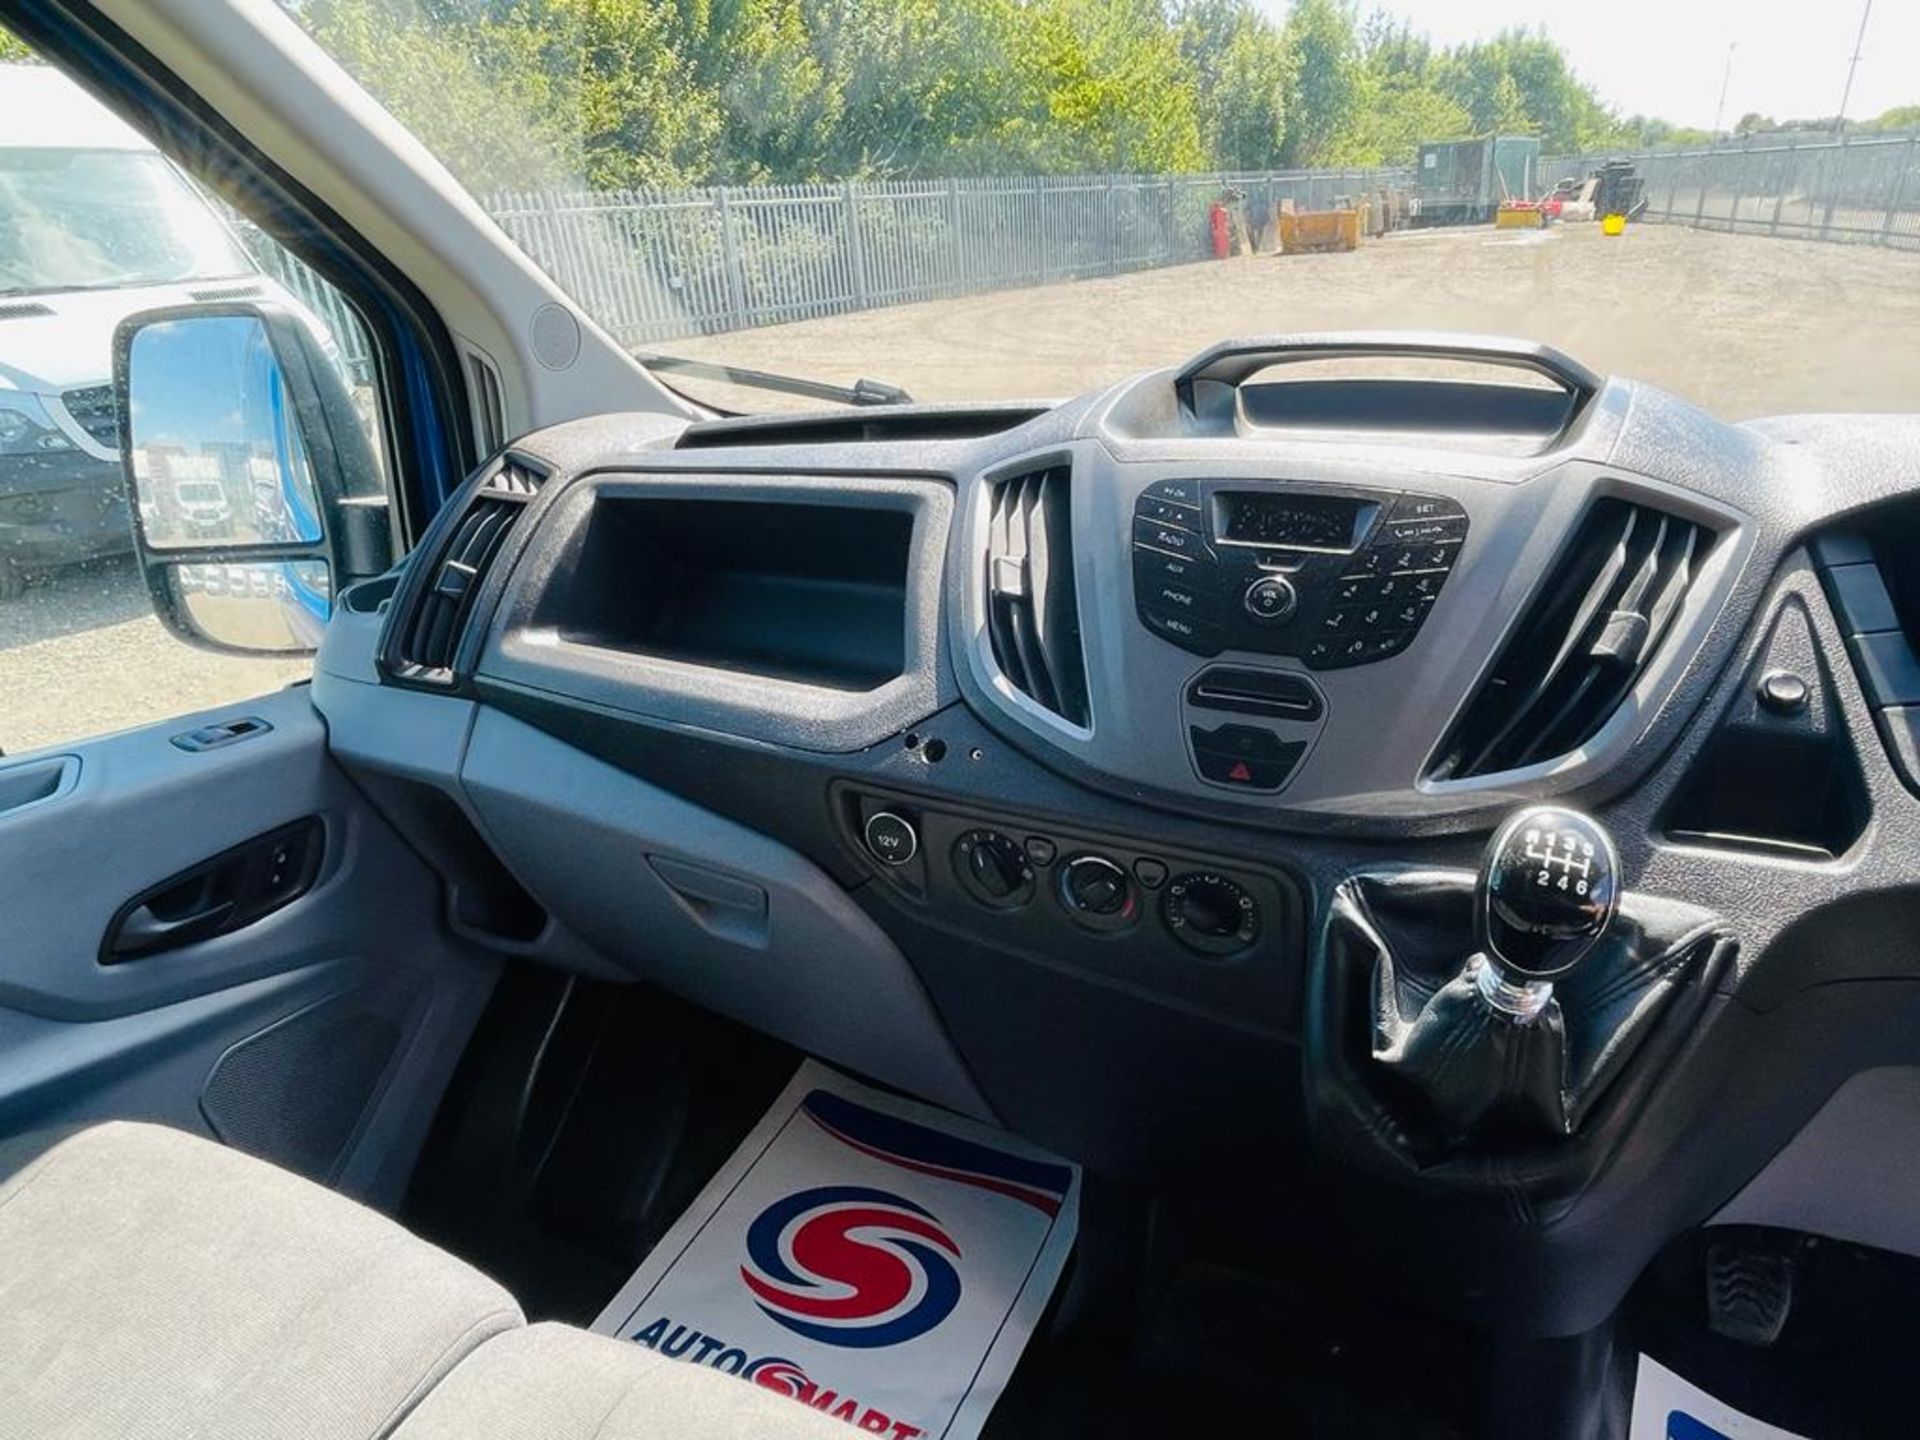 Ford Transit 2.2 TDCI T350 100 RWD L2 H2 2016 '66 Reg' Euro 6b - ULEZ Compliant - Panel Van - Image 19 of 22